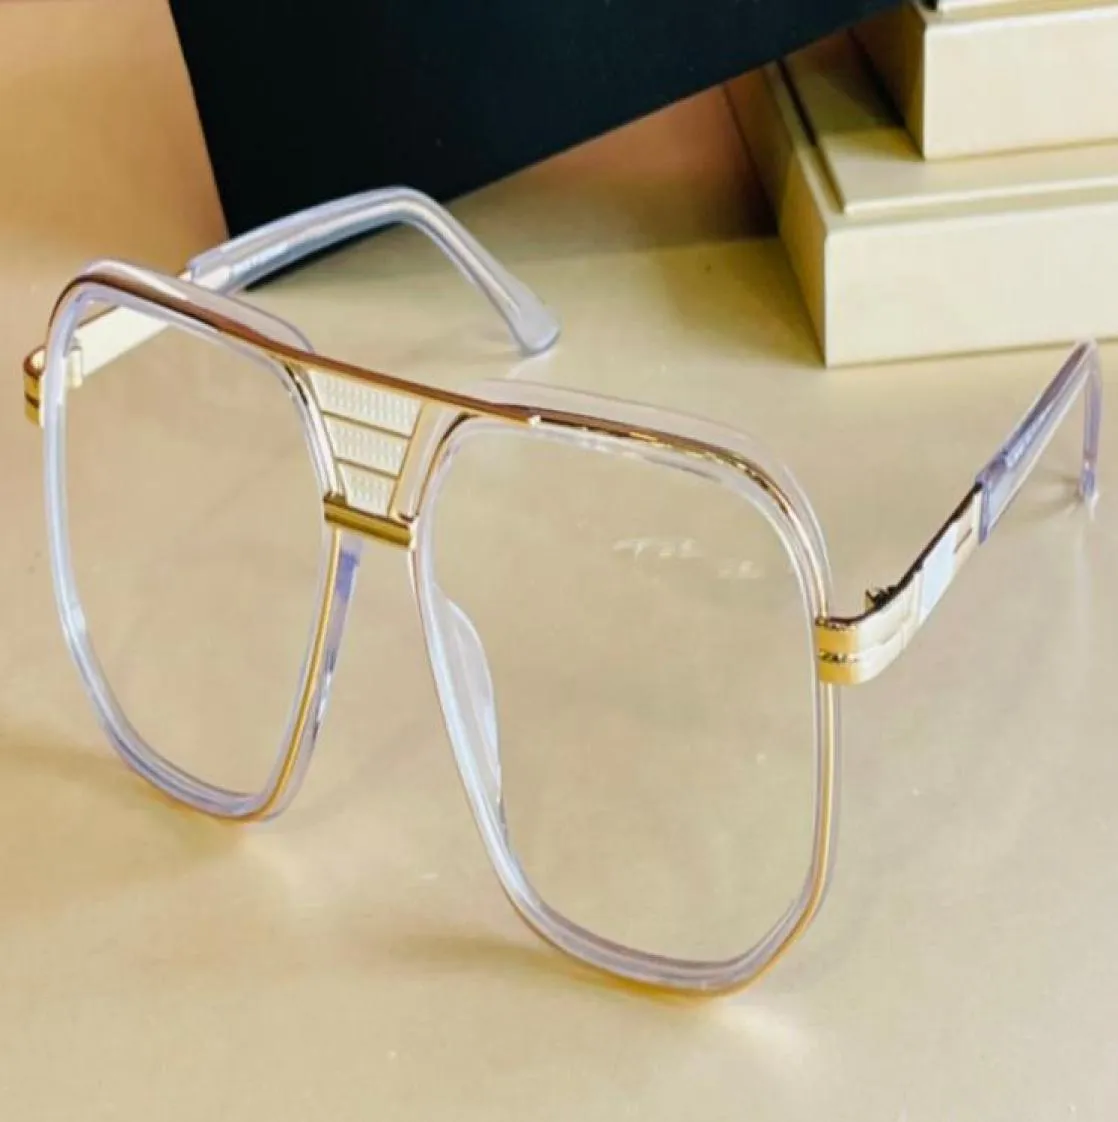 Legends 666 Eyeglasses Frame Clear Lens Vintage Crystal Gold Pilot Glasses Frame Eyewear Men Fashion Sunglasses Frames with Box3135699